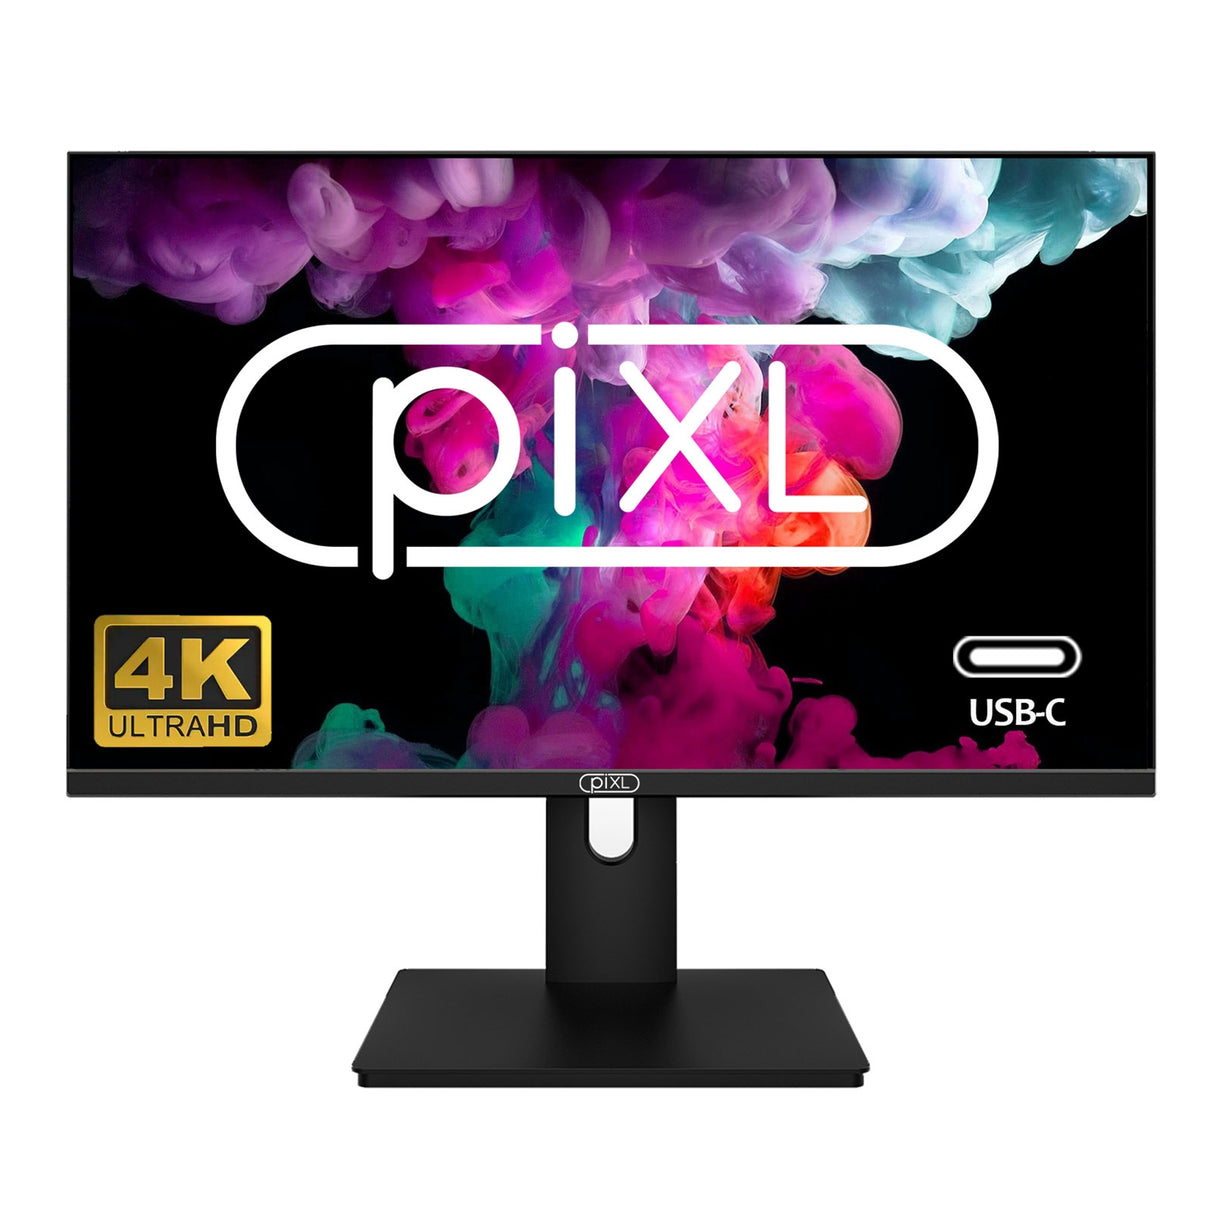 piXL PX27UDH4K Moniteur IPS sans cadre 27 pouces, 4K, écran large LED, temps de réponse 5 ms, rafraîchissement 60 Hz, HDMI, port d'affichage, 2 x USB-A+, USB-B+, USB-C 16,7 millions de couleurs, support VESA, finition noire